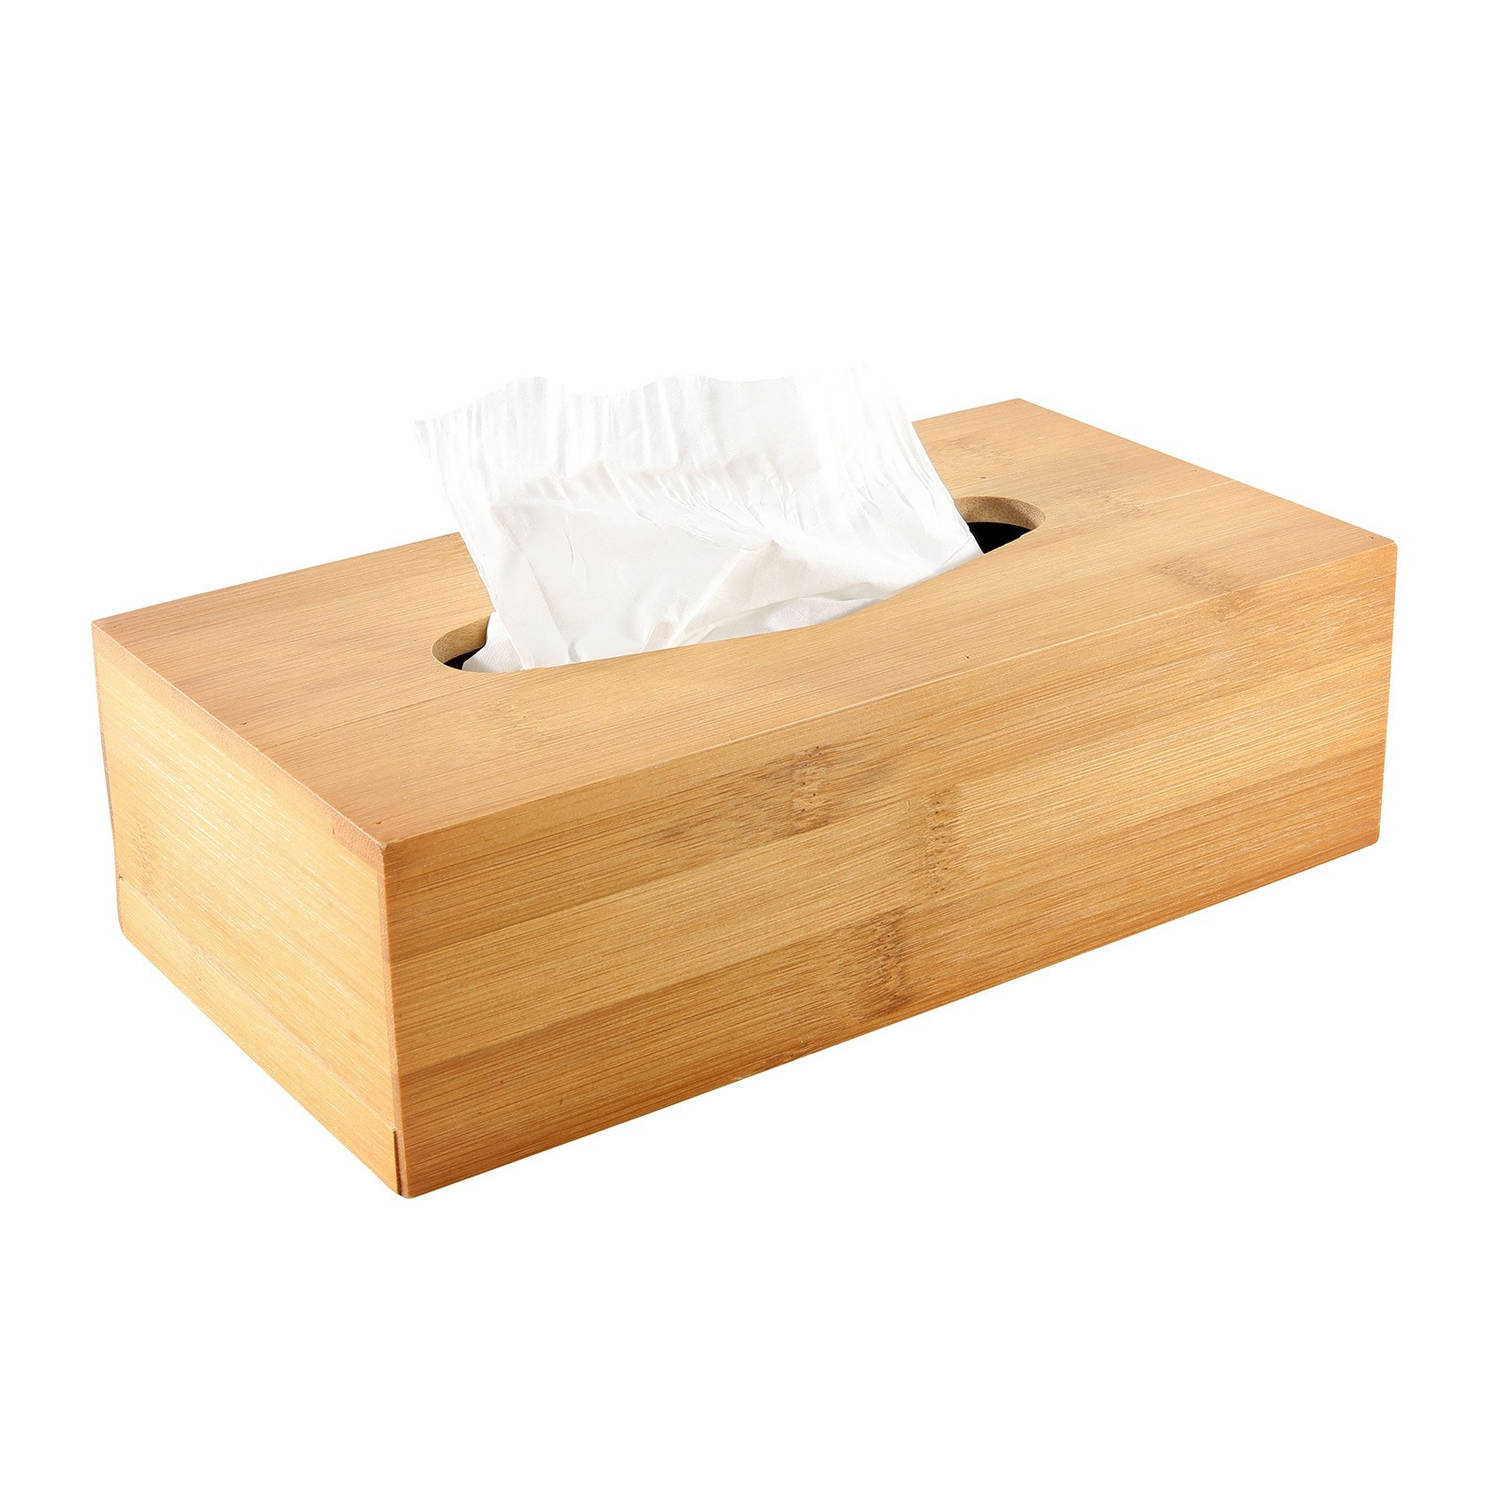 Tissuedoos/tissuebox - bamboe hout 25 x 13 cm - Bamboehouten box/doos voor tissues